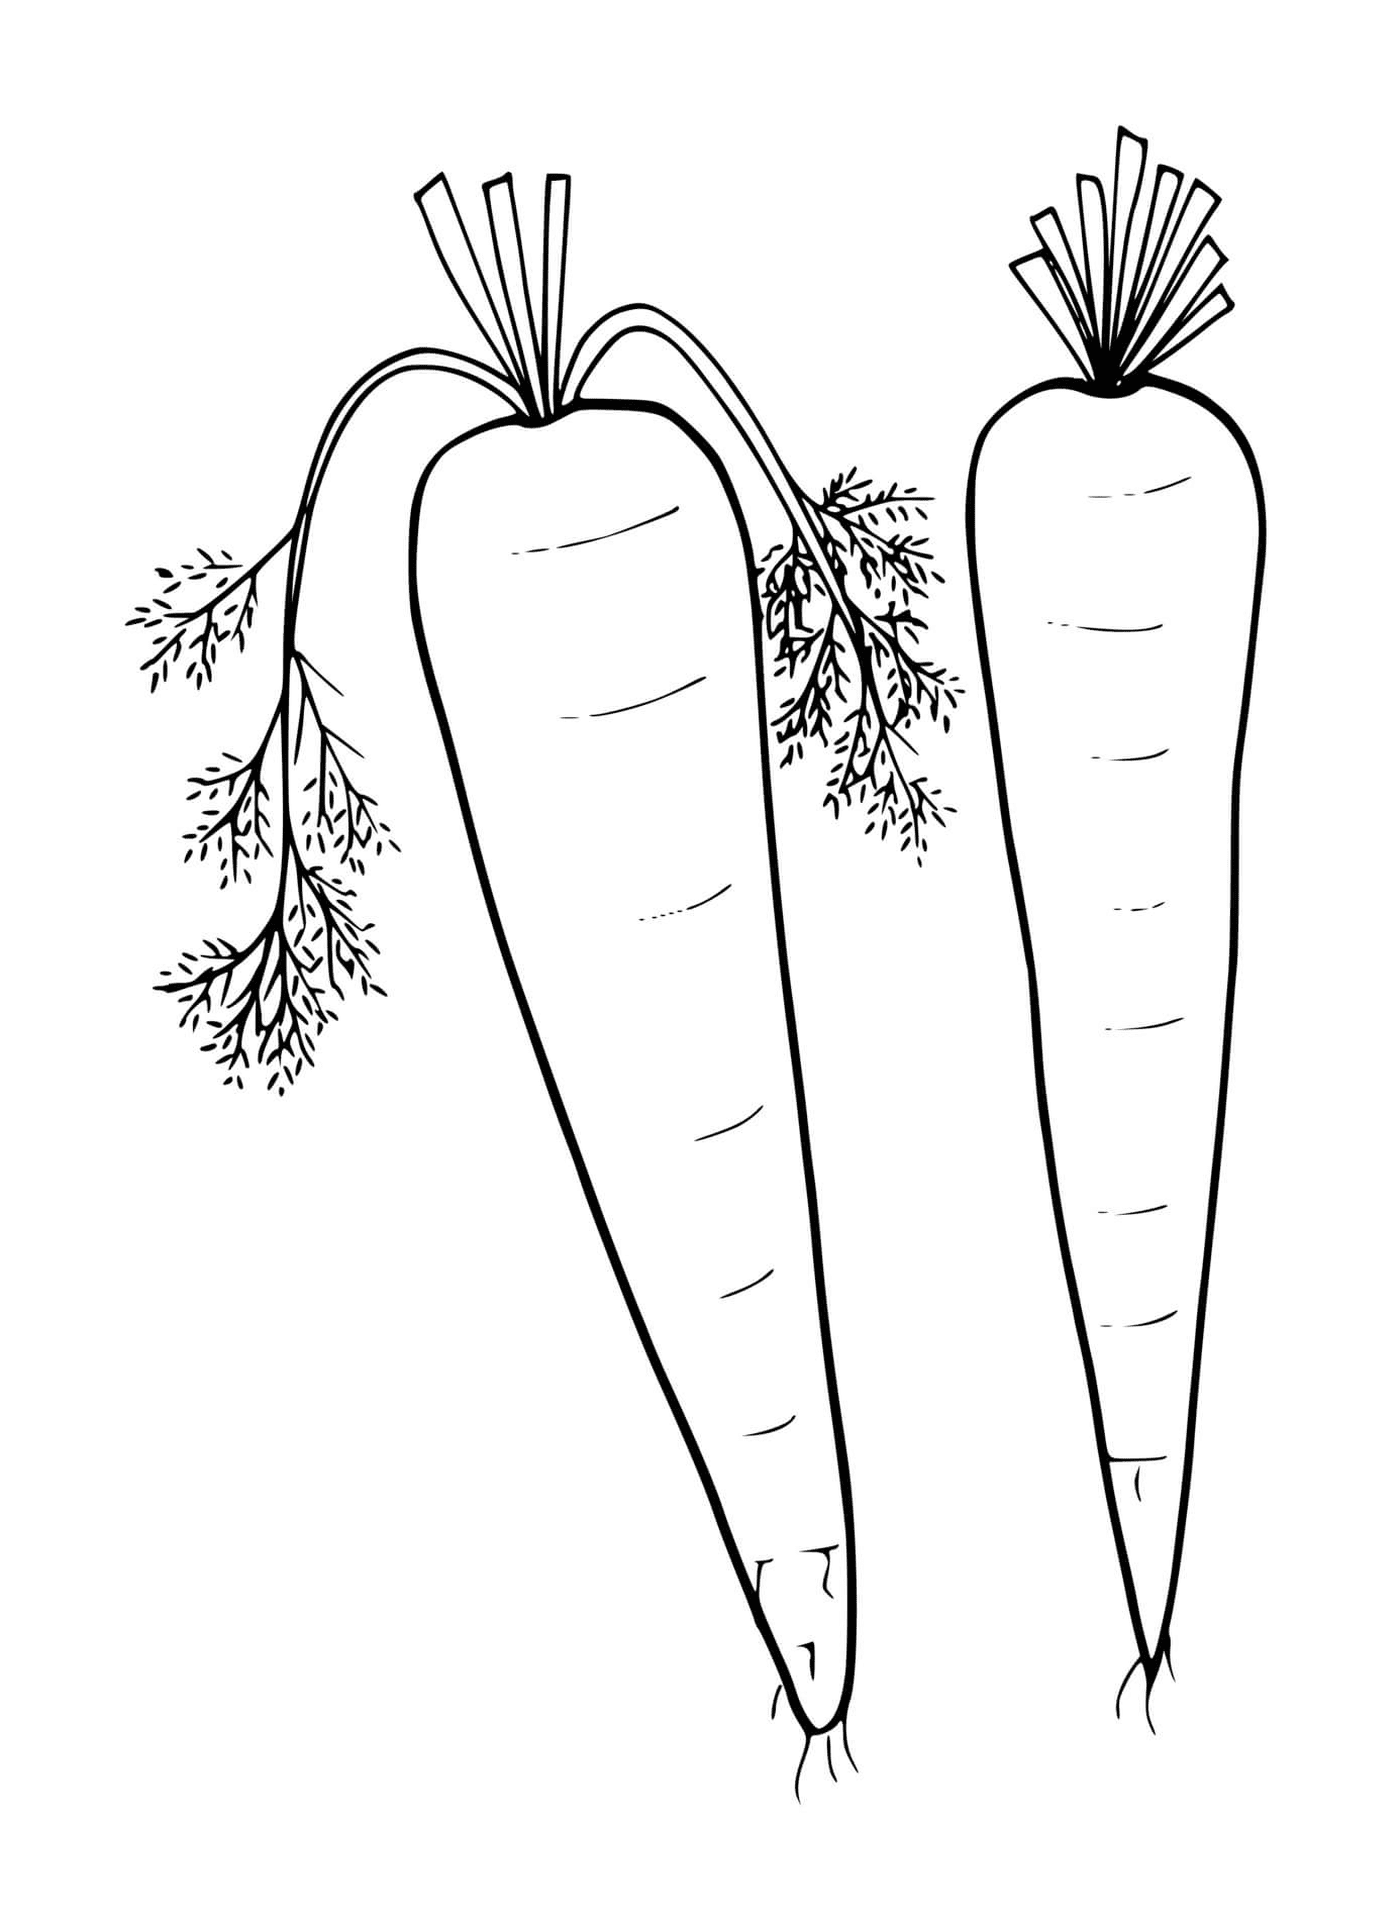  Zanahoria fresca, dos zanahorias sobre fondo blanco 